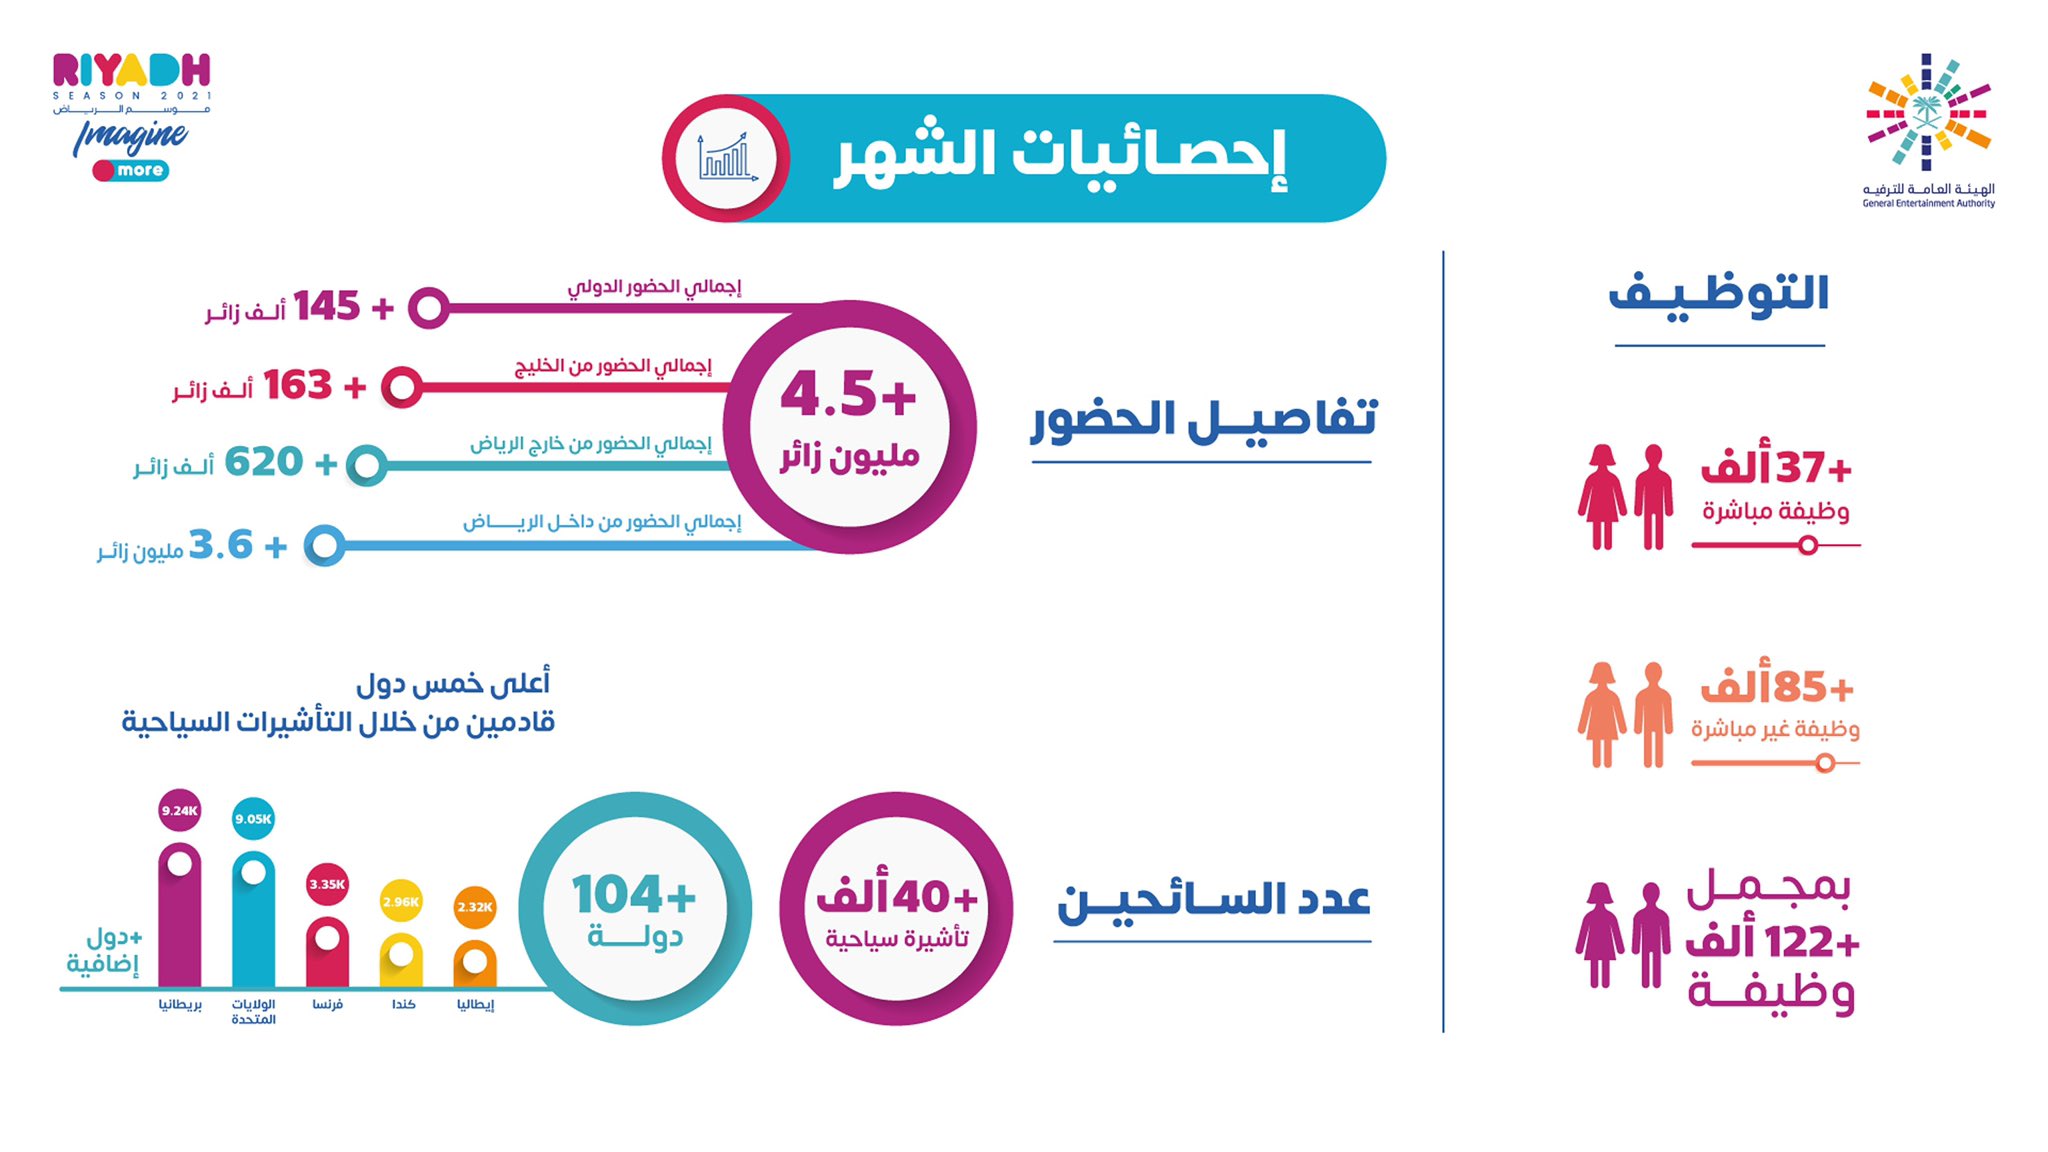 موسم الرياض يوفر أكثر من 122 ألف وظيفة في شهر